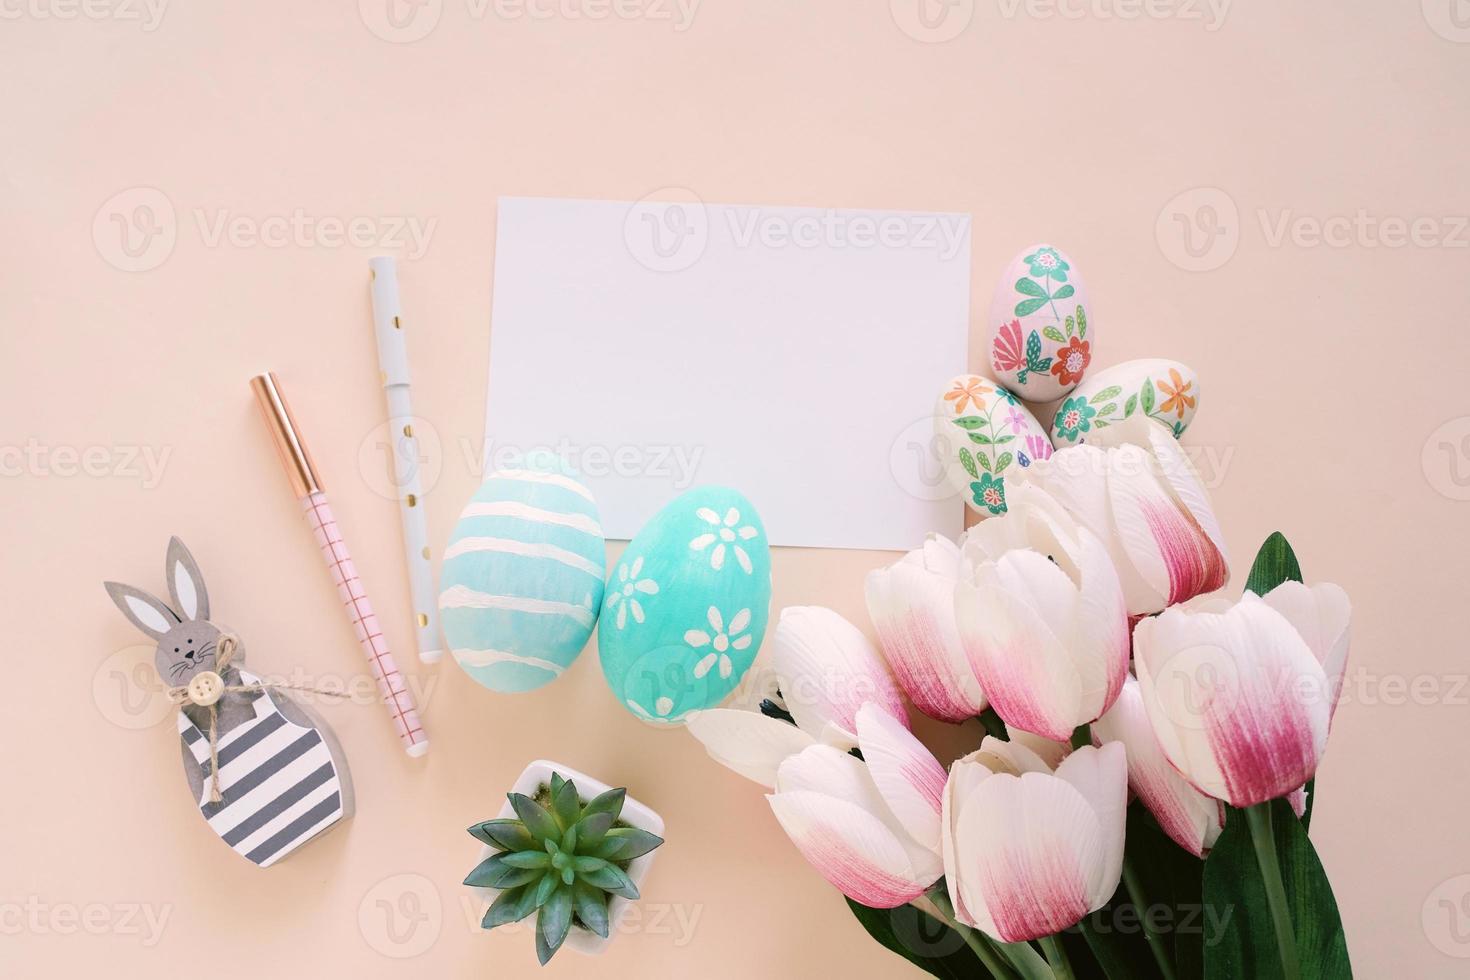 feliz concepto de pascua con tarjeta en blanco y coloridos huevos de pascua y tulipanes rosas. vista superior con espacio de copia foto